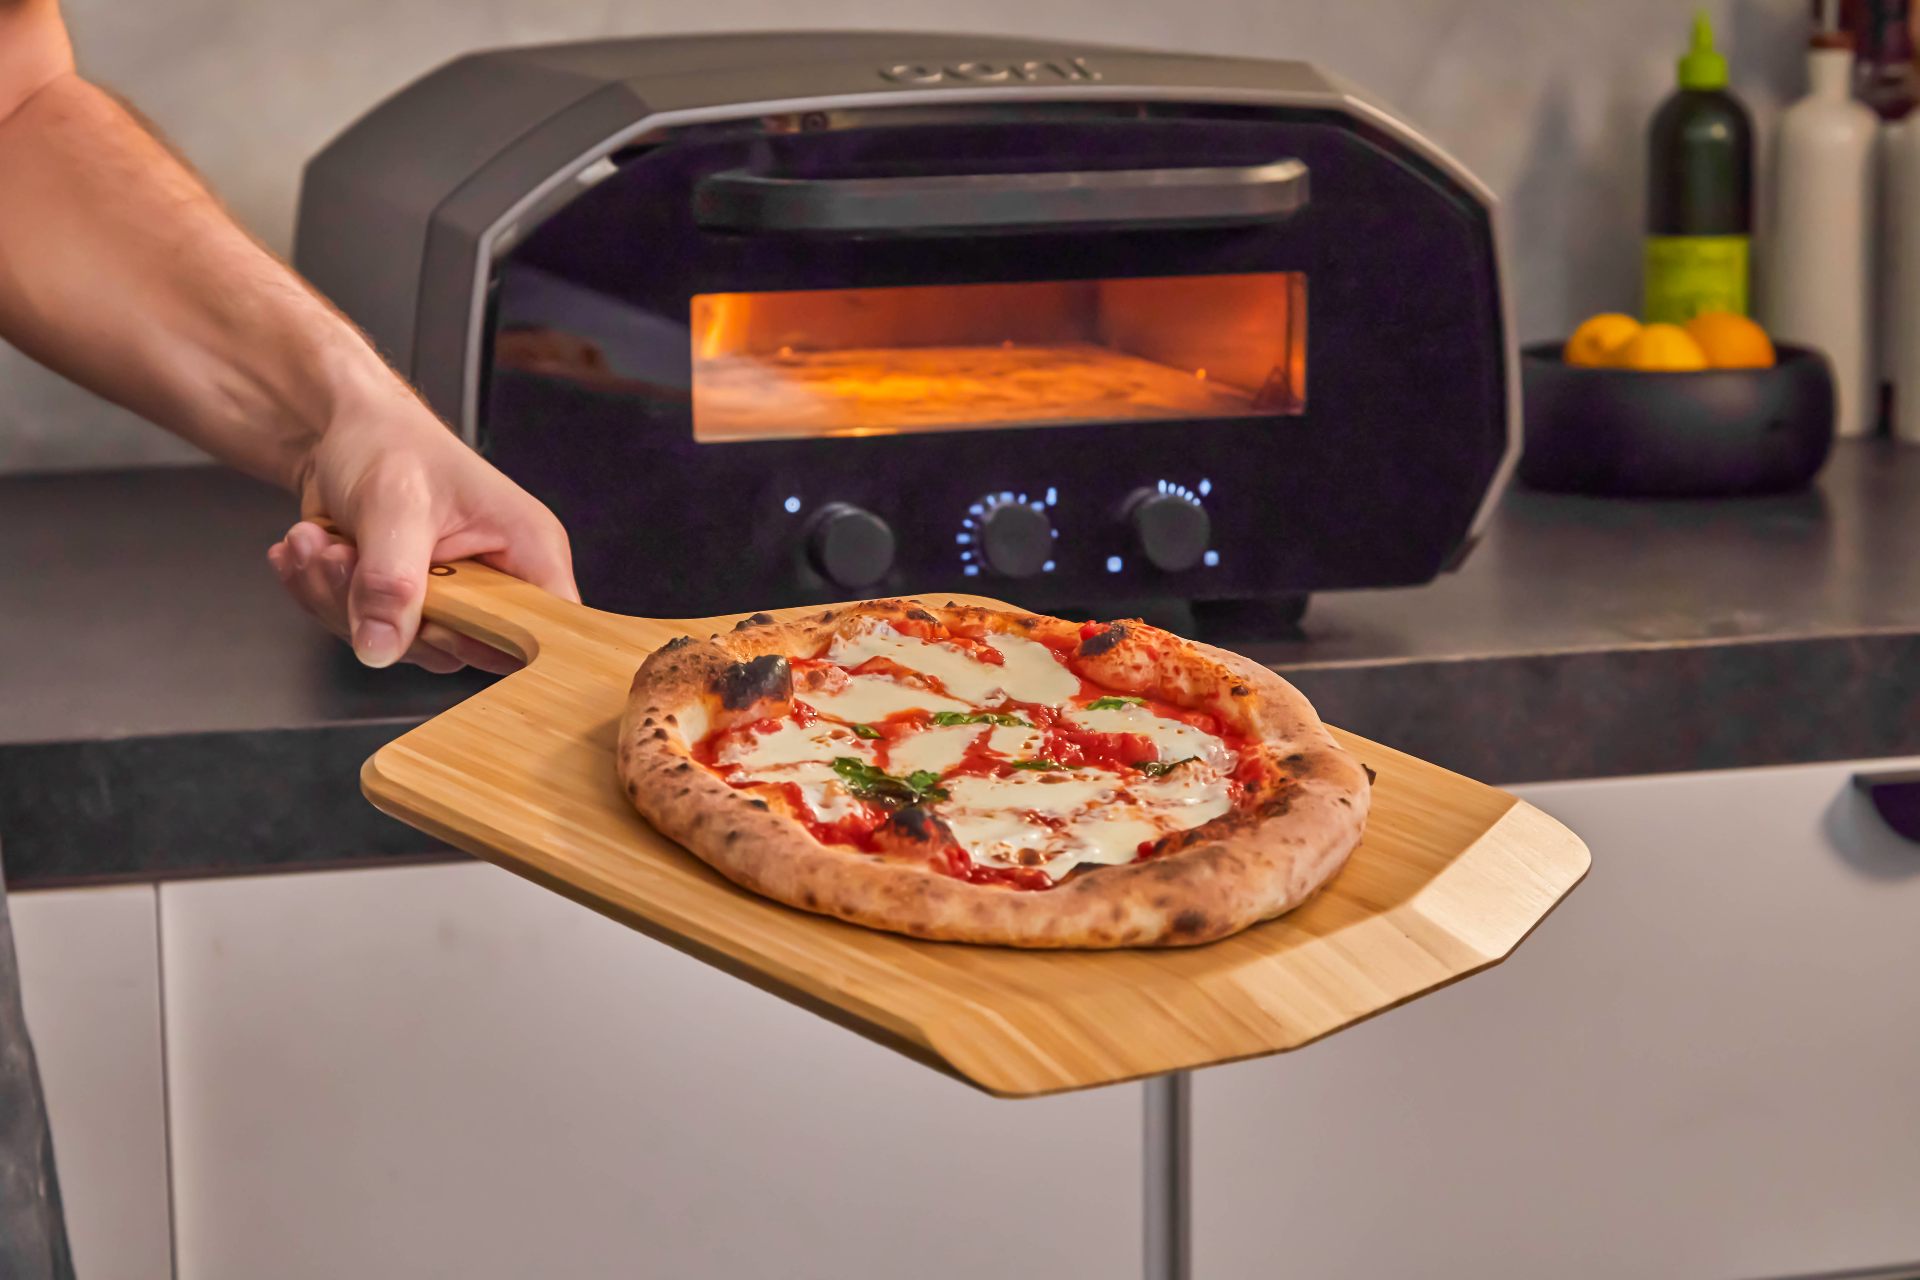 Pizza in stile napoletano cotta con il forno elettrico Ooni Volt 12 — Ooni  IT